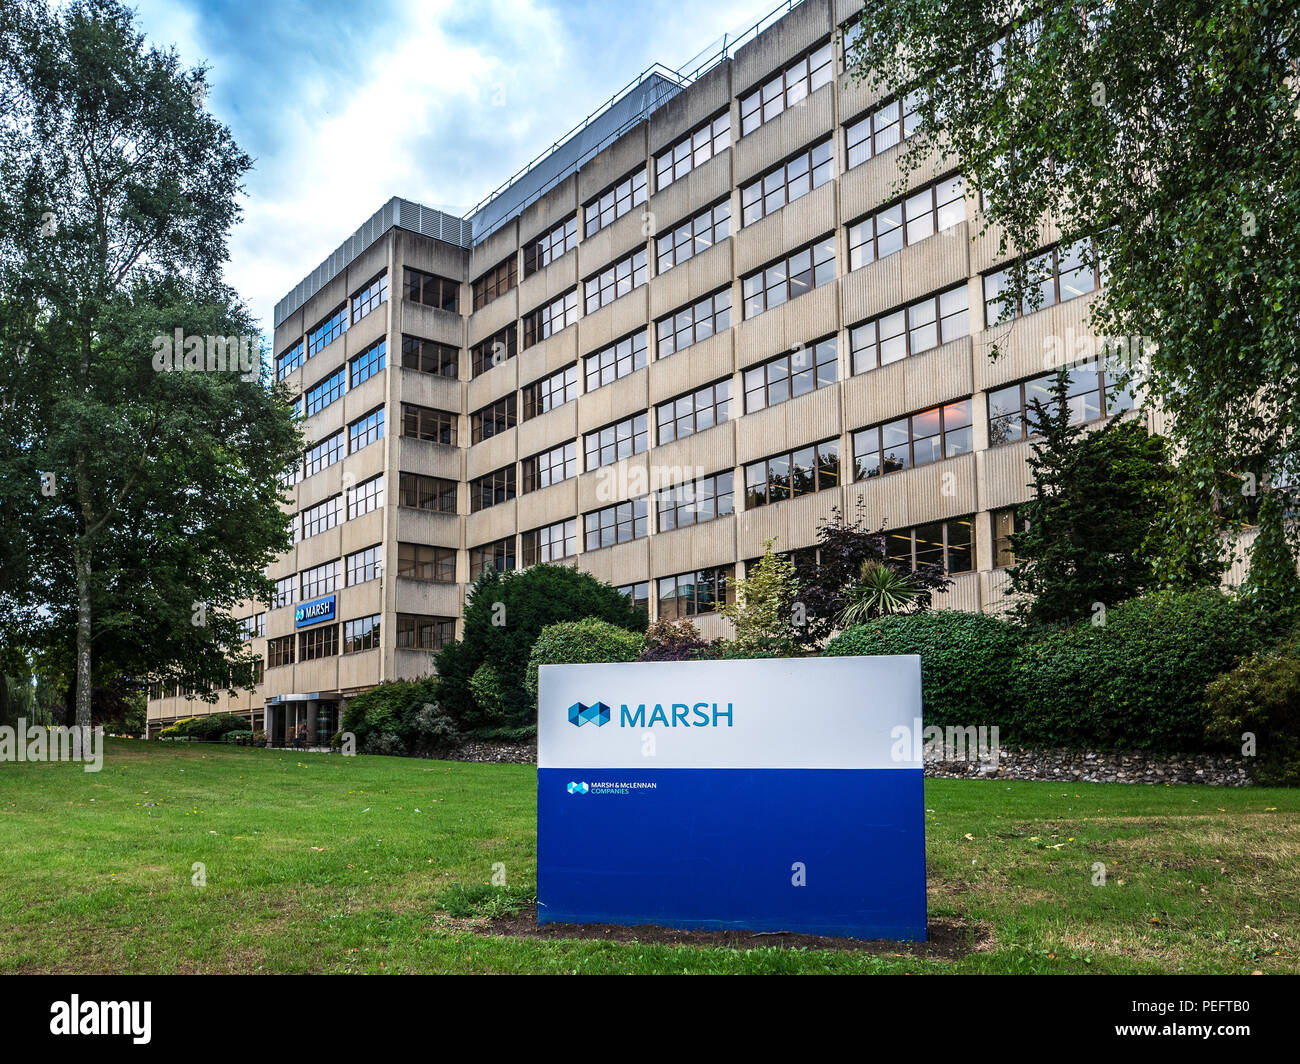 Marsh Insurance - Victoria House bureaux à Norwich UK - Marsh est une compagnie mondiale d'assurance et de gestion des risques. Fait partie du groupe Marsh & McLennan. Banque D'Images